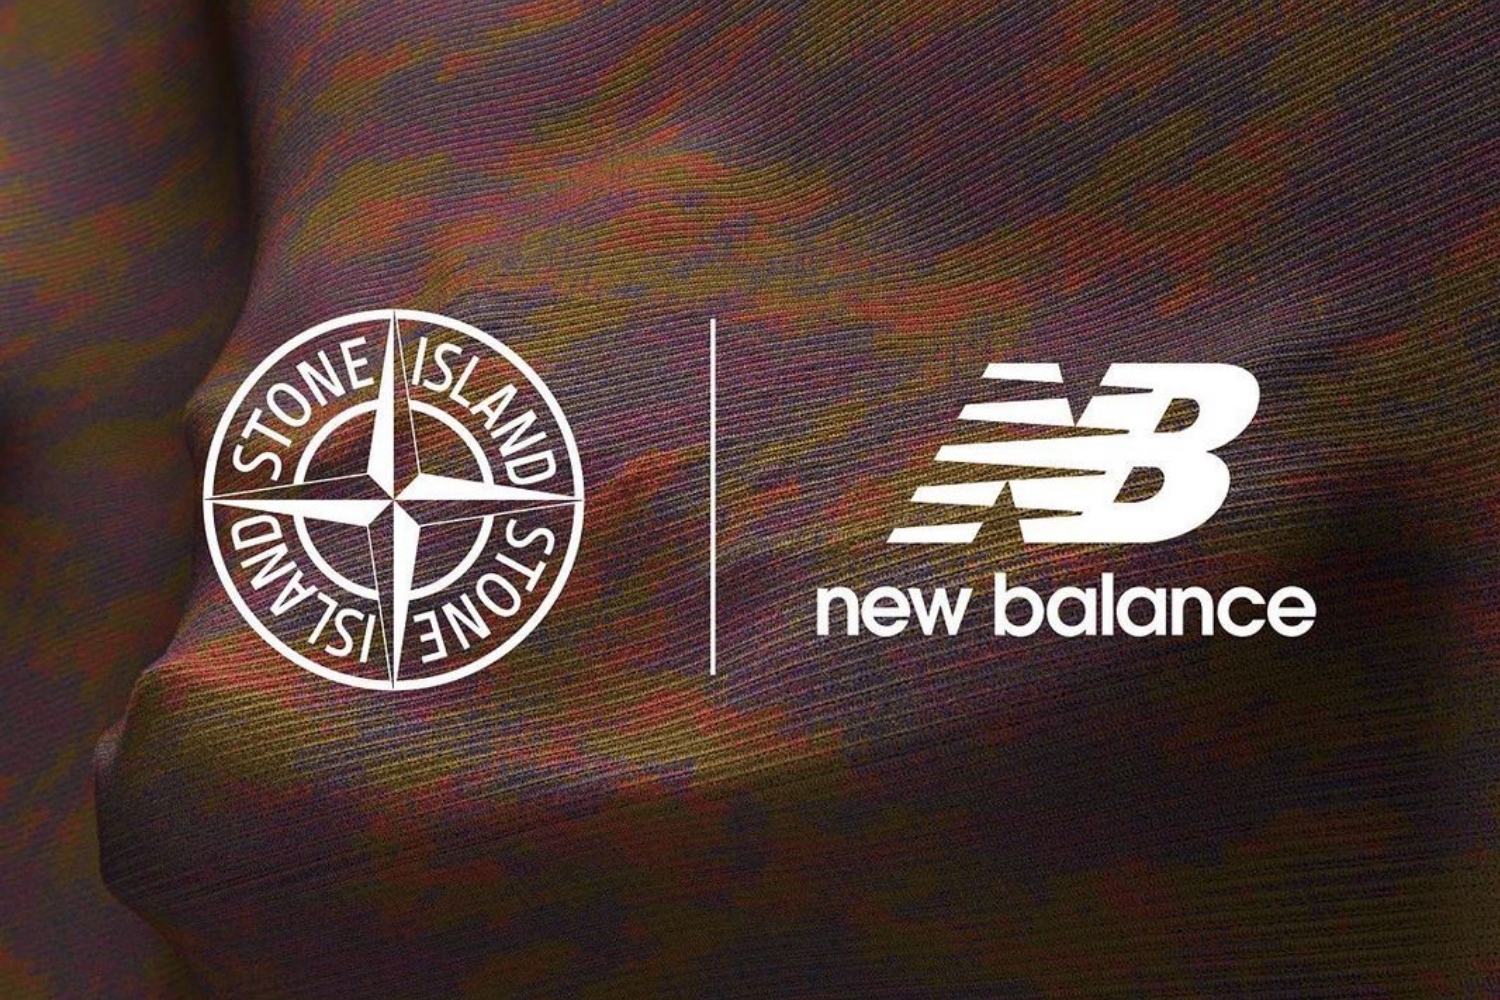 Der New Balance x Stone Island FuelCell C_1 hat ein Release Datum